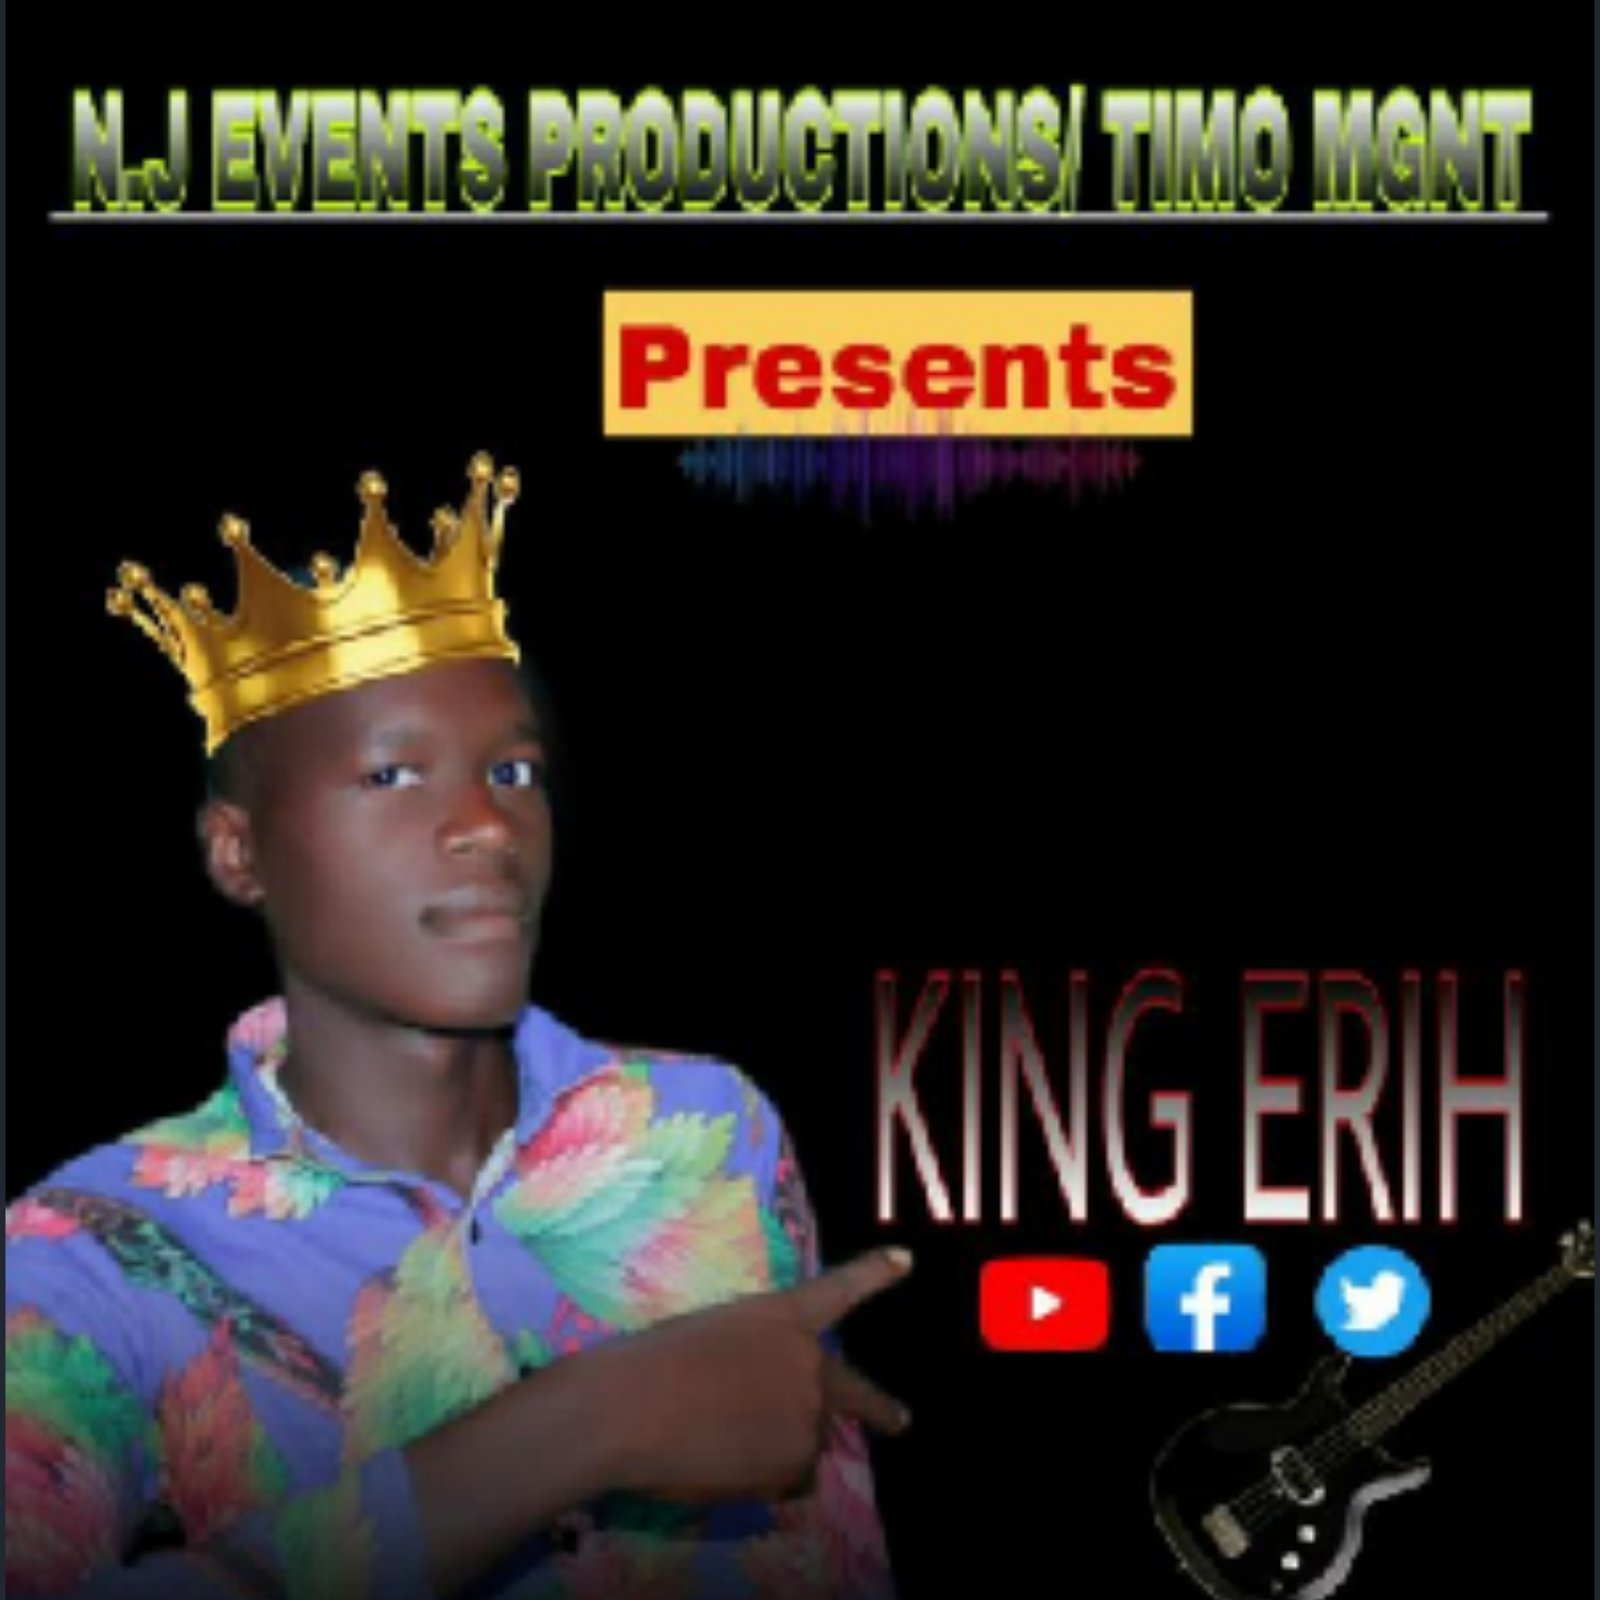 King Eri